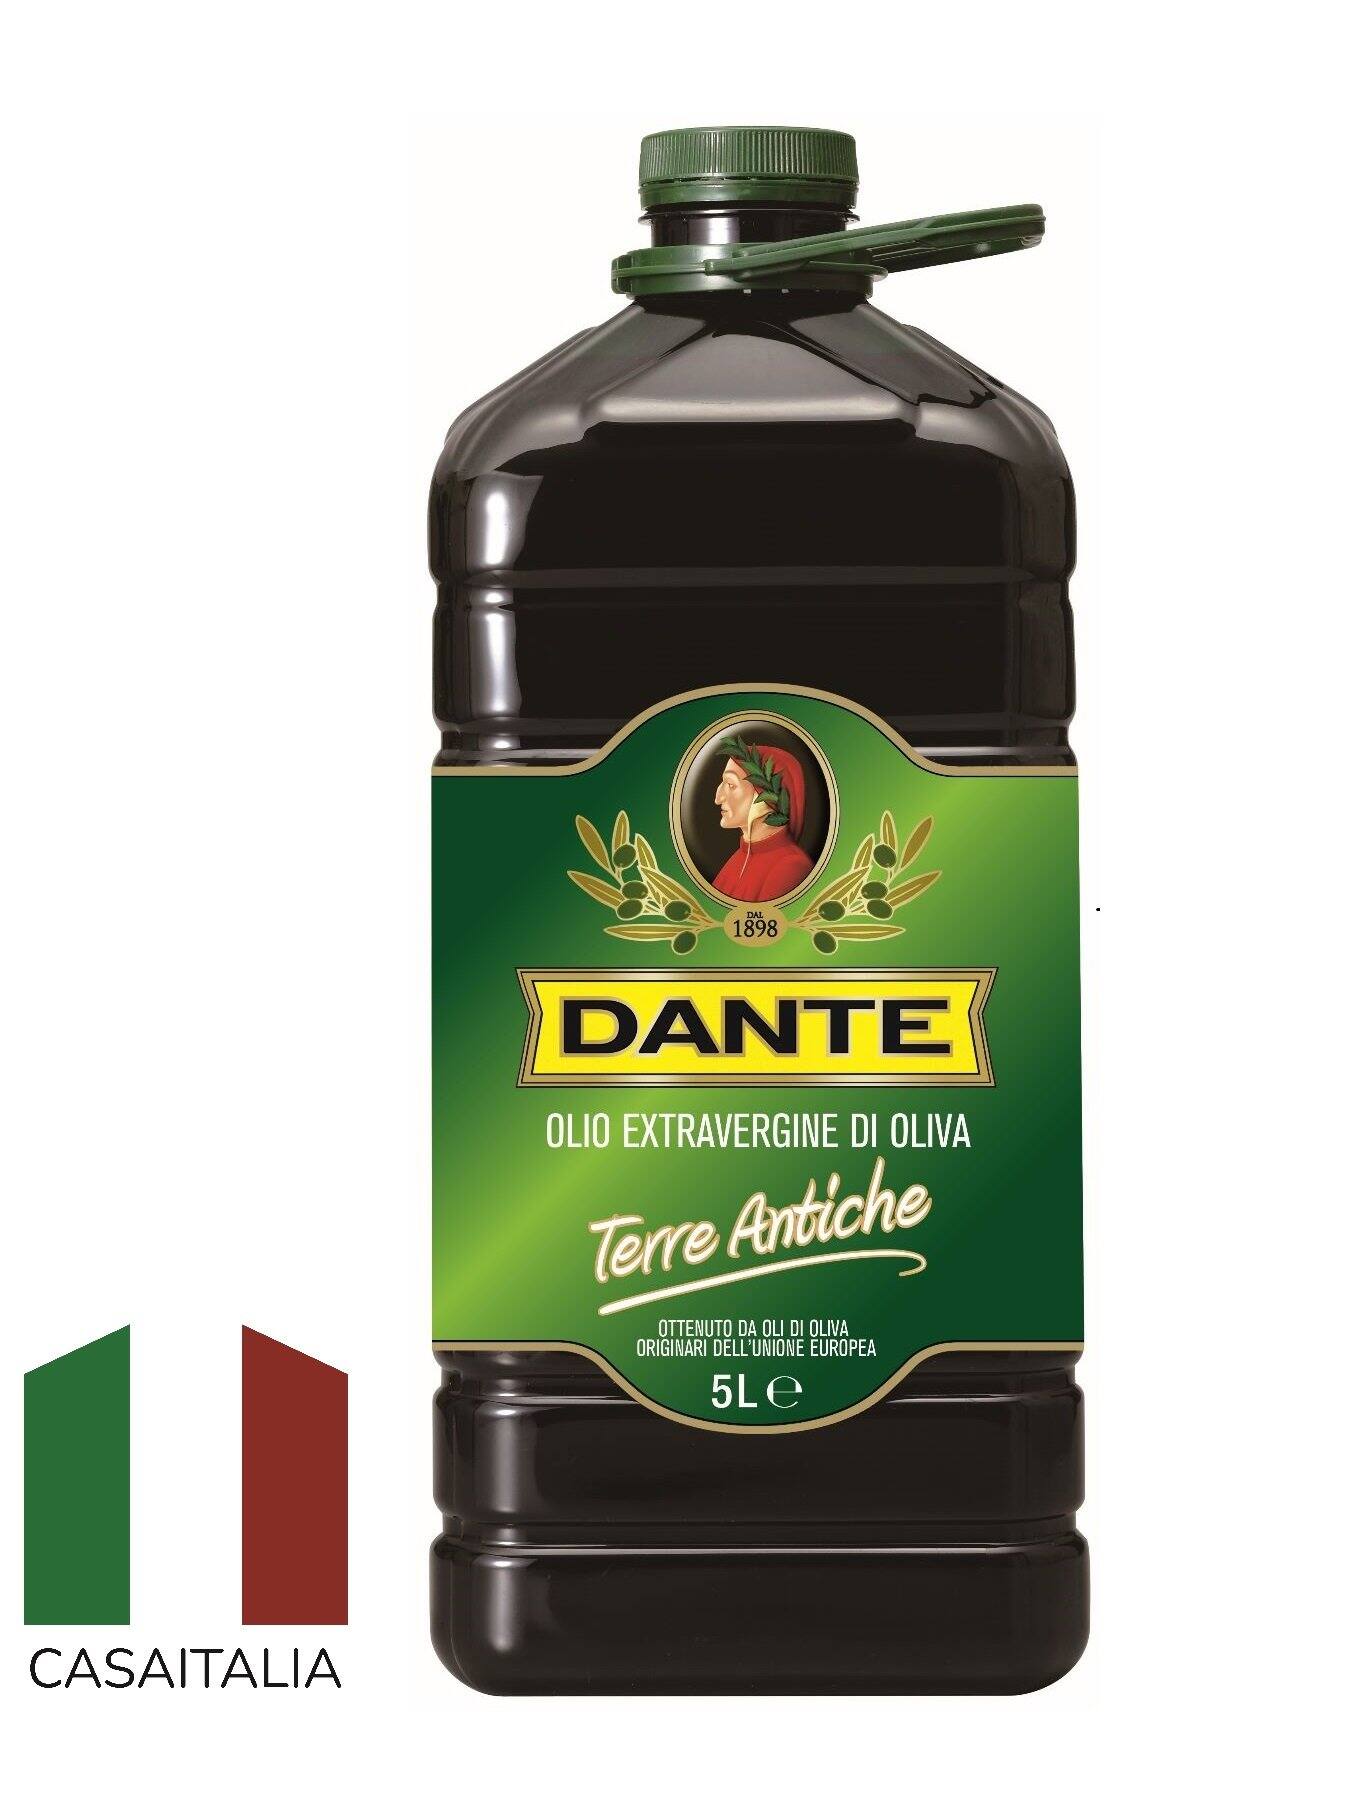 Dầu oliu siêu nguyên chất Dante Terre Antiche 5L 0.5l